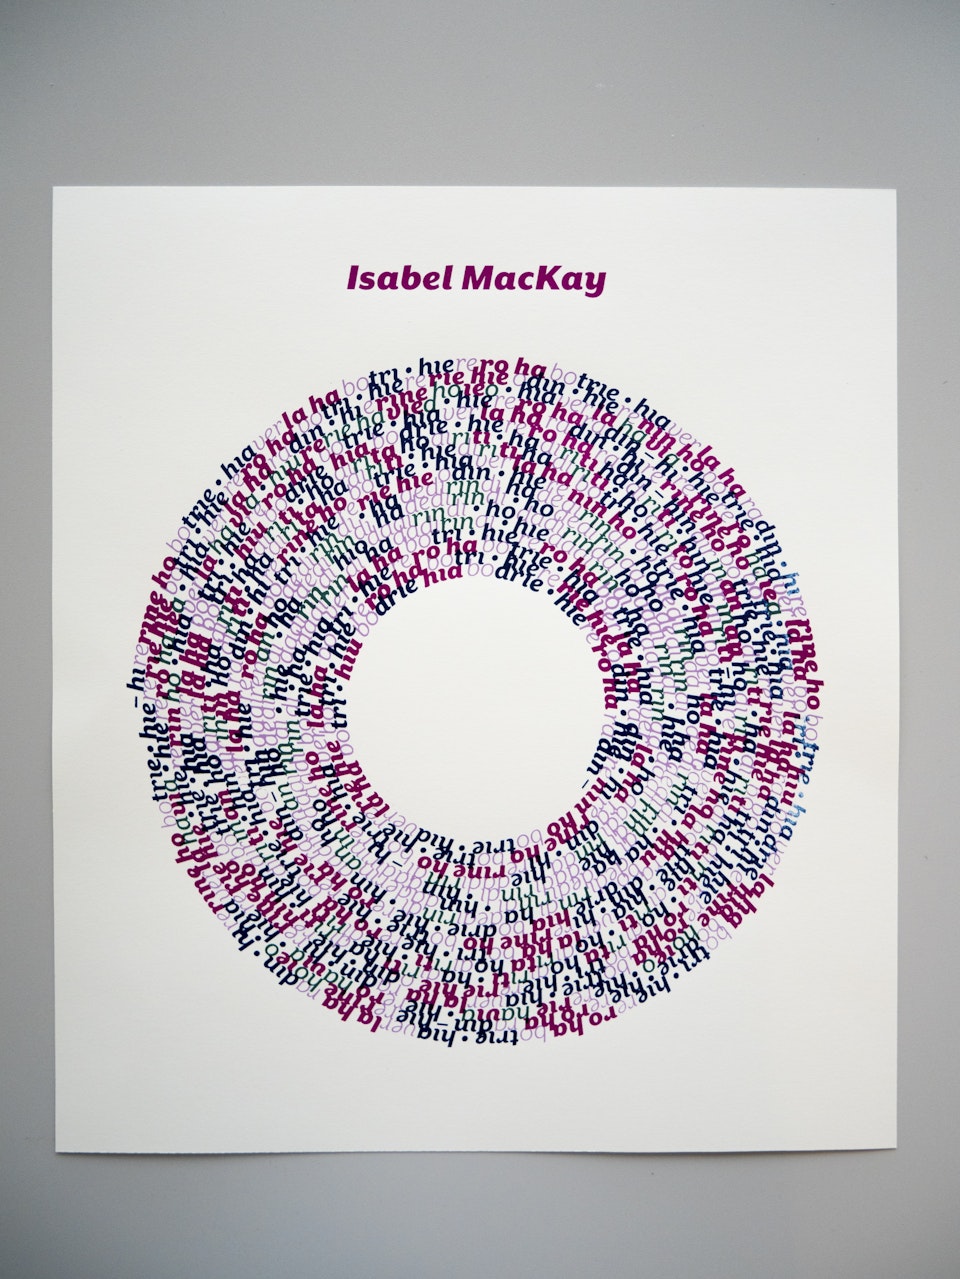 Print making - Screen print of "Isabel Mackay"